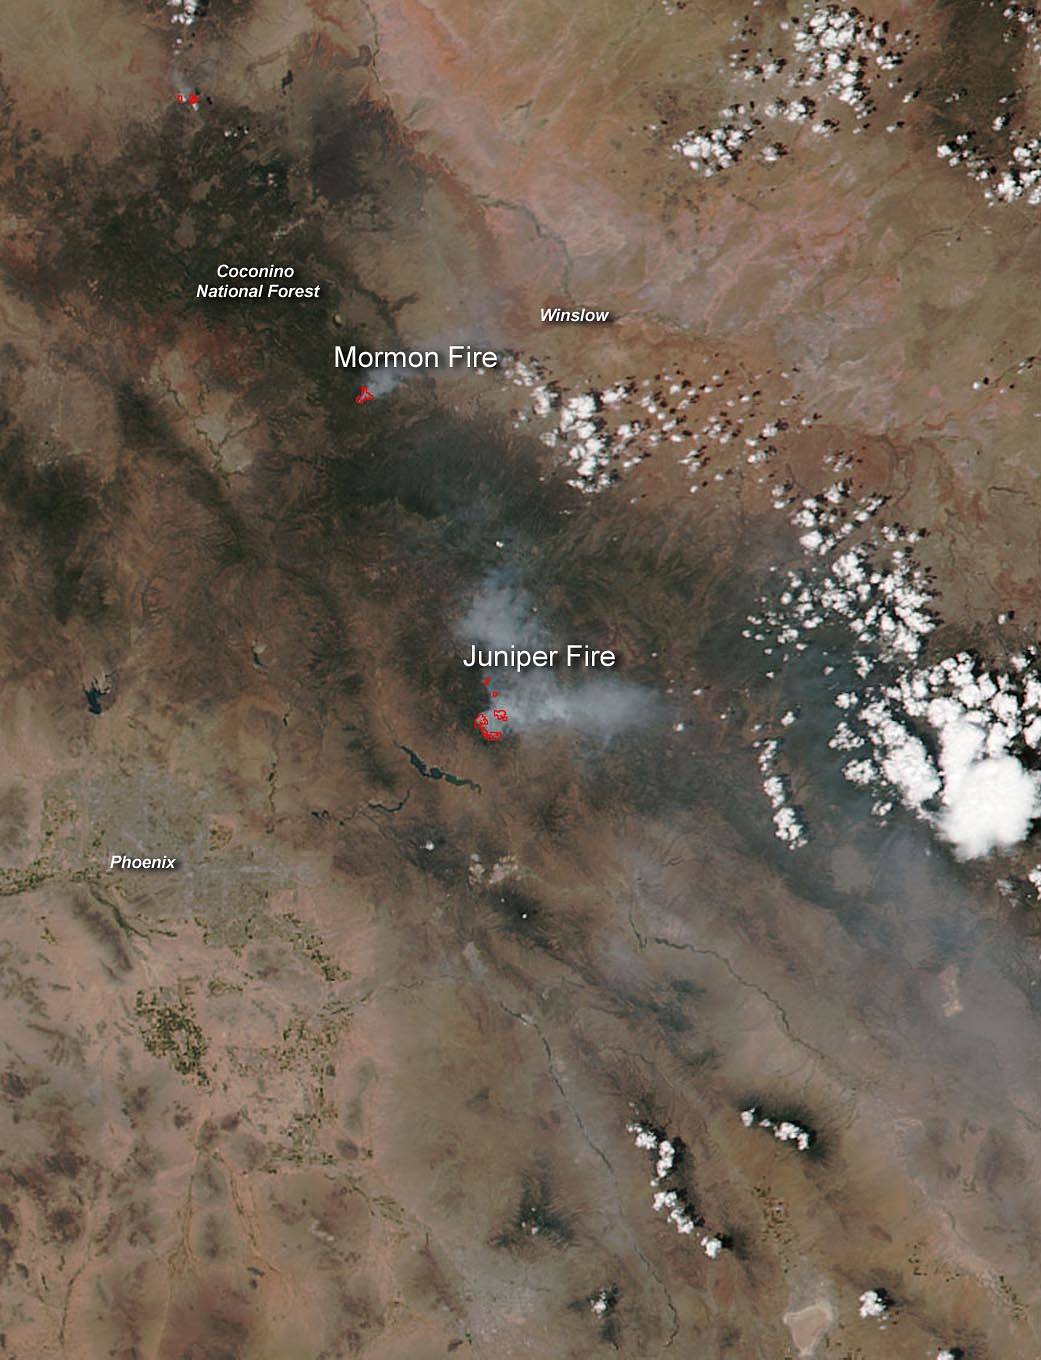 Suomi NPP Image of Arizona Fires